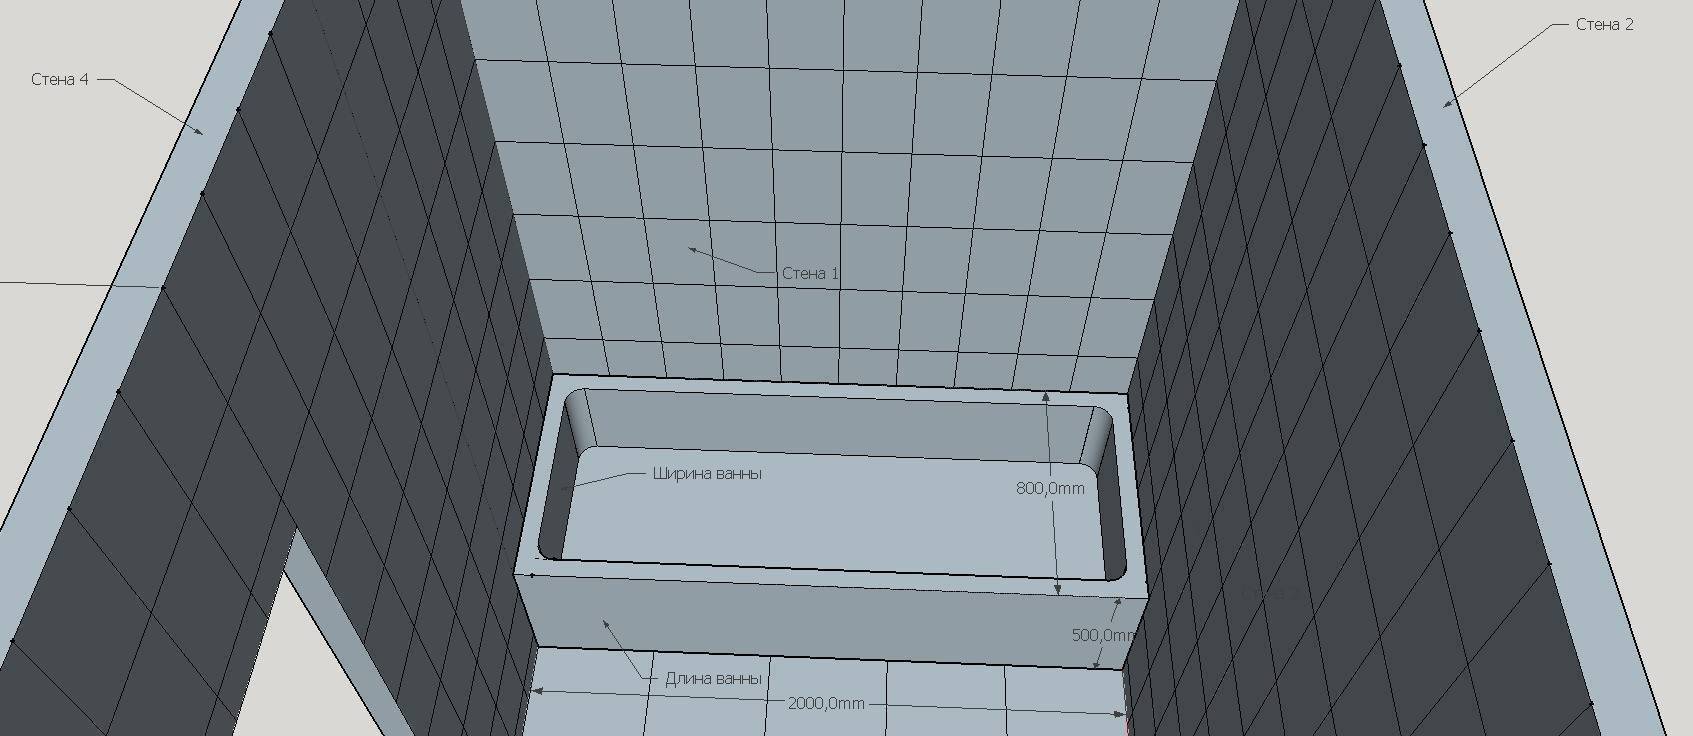 Расчет плитки для ванной - какие параметры необходимо учитывать